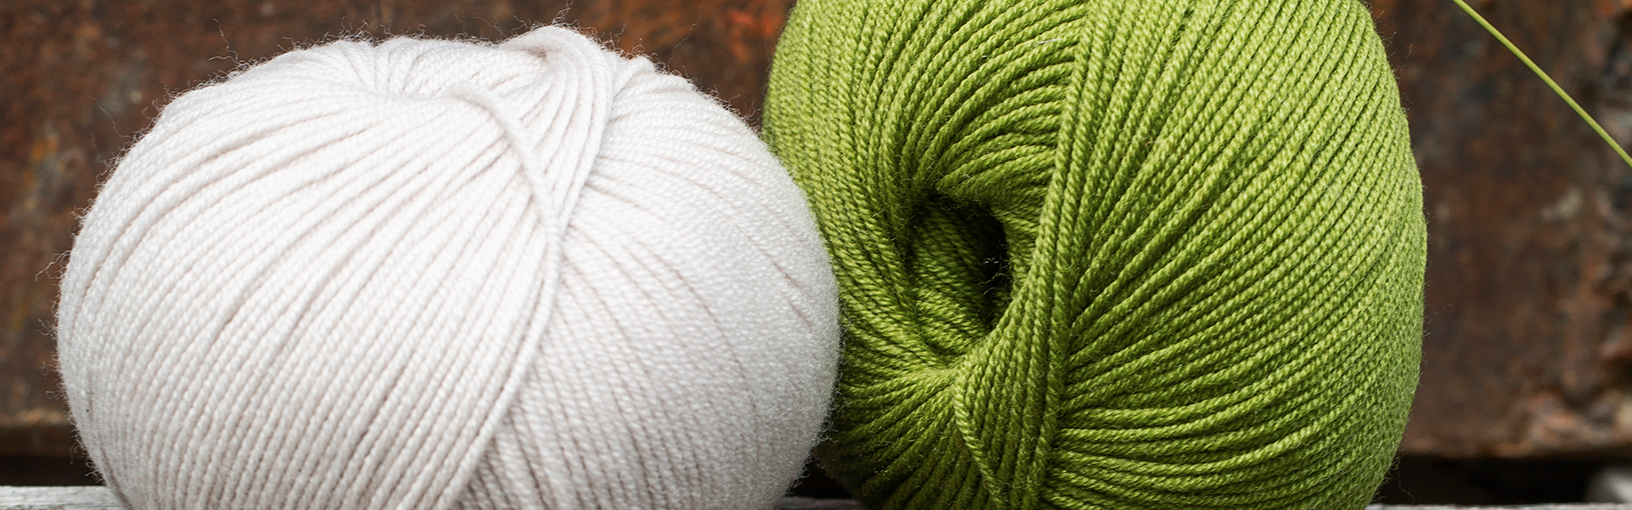 Filati di alta qualità per lavorare a maglia, uncinetto e infeltrimento Filati Lana Grossa | Novità